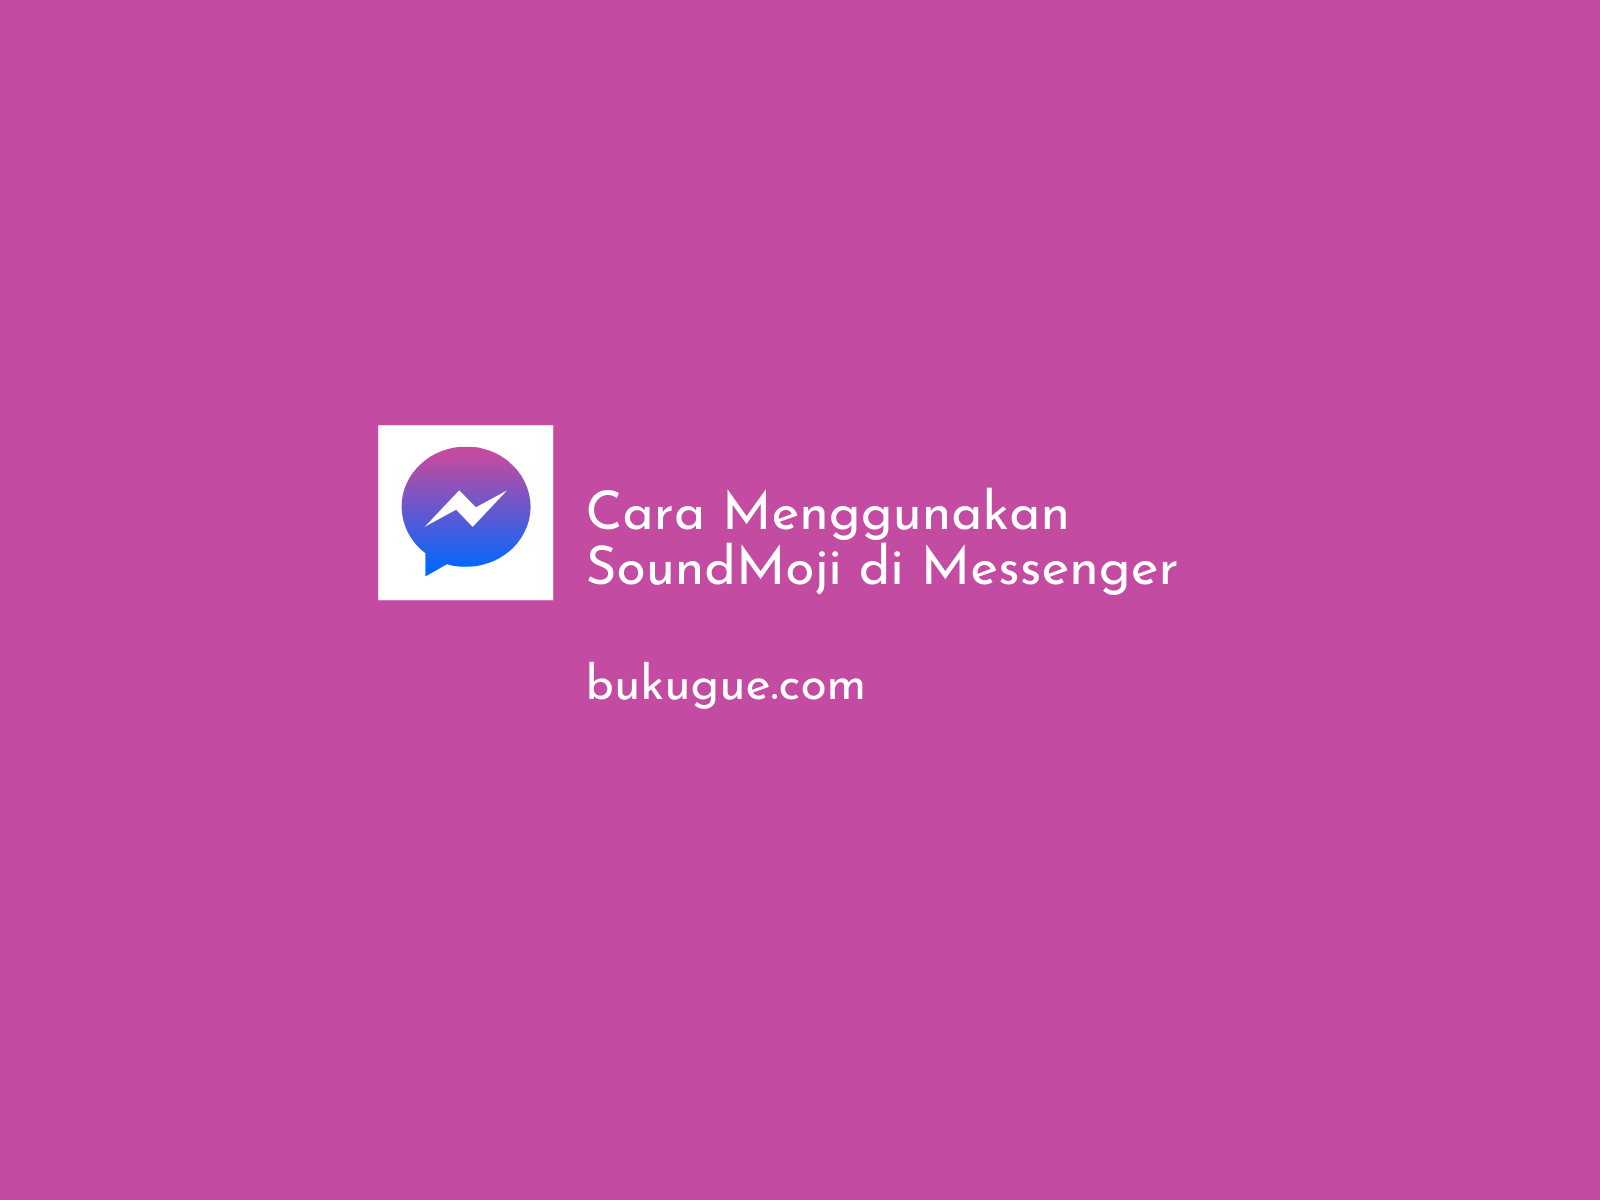 Cara menggunakan soundmoji di Messenger (Lengkap)